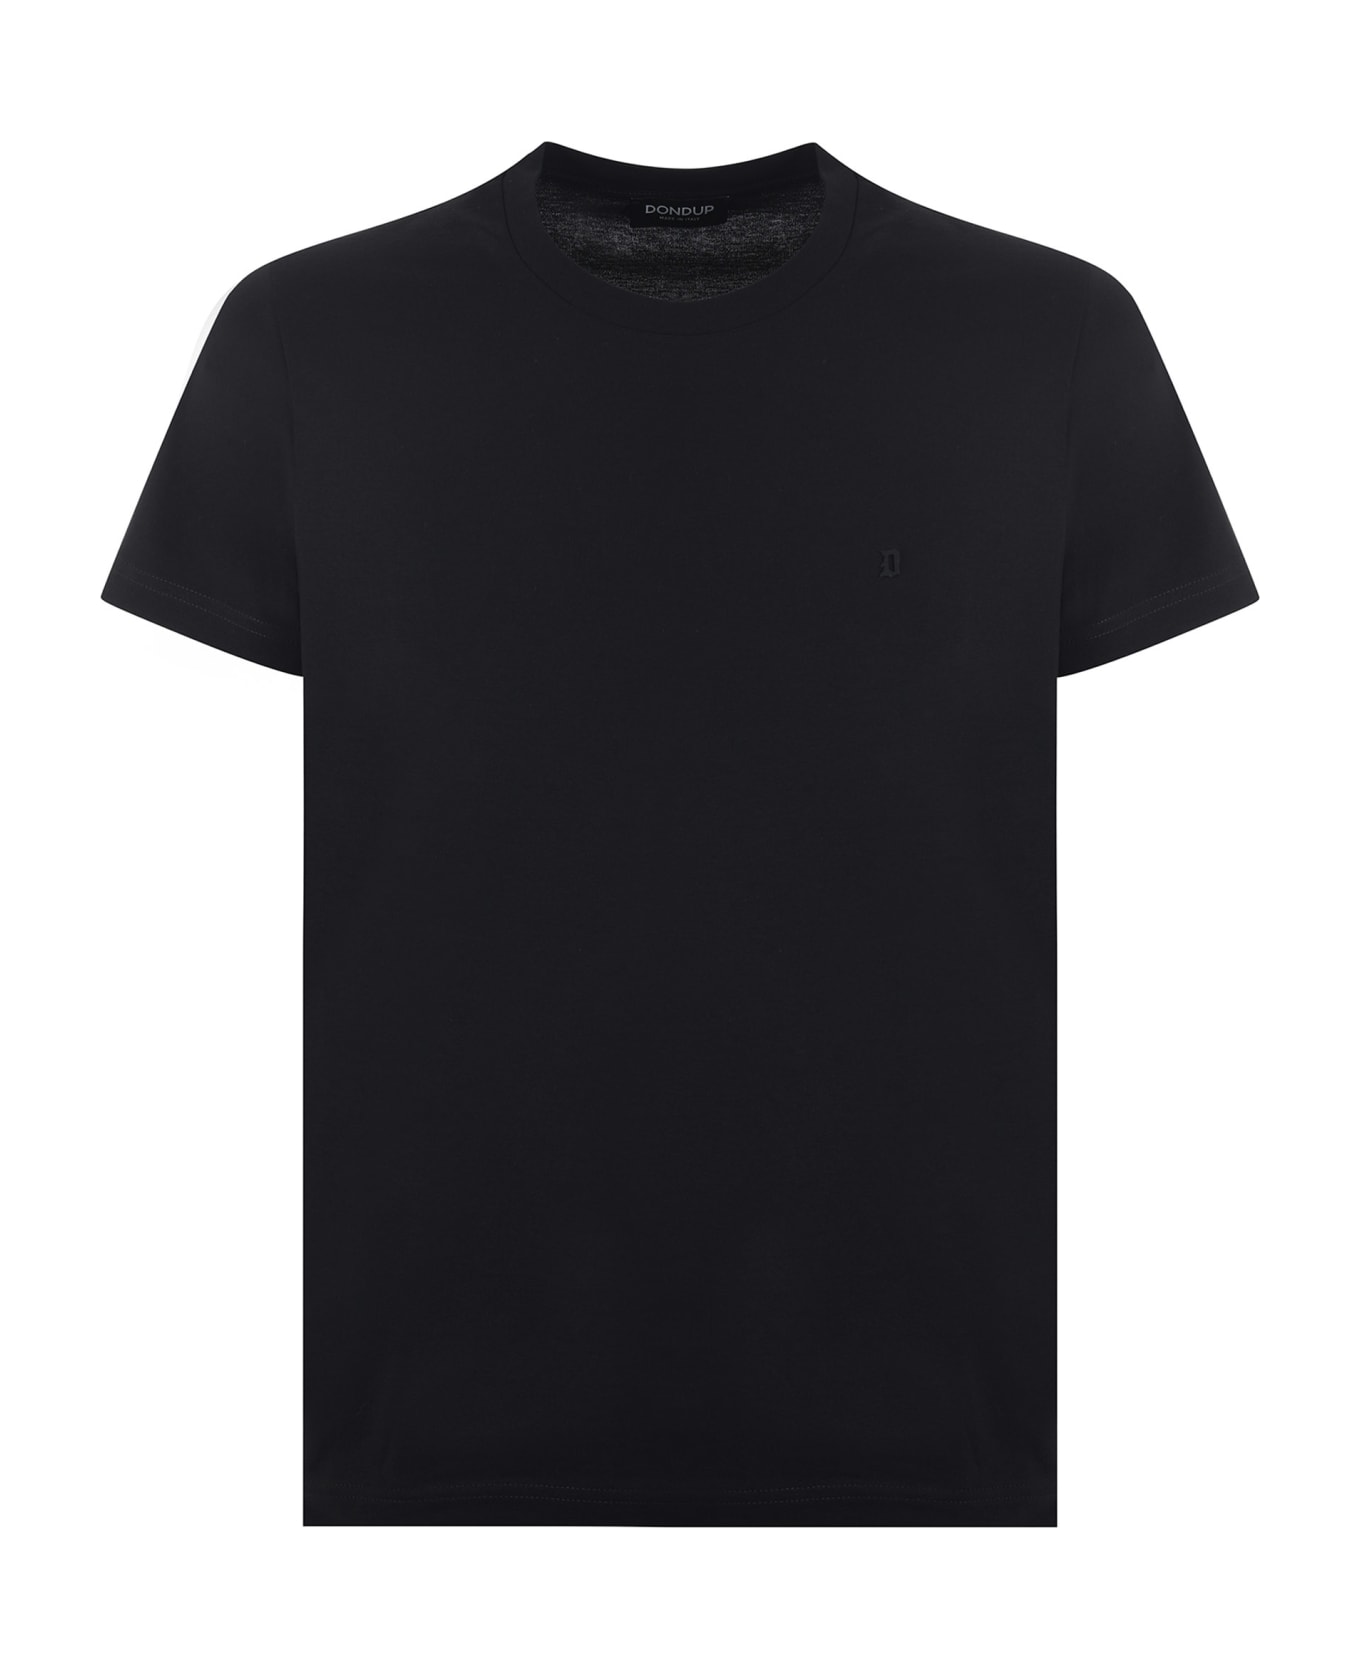 Dondup Round Neck T-shirt Dondup - Black